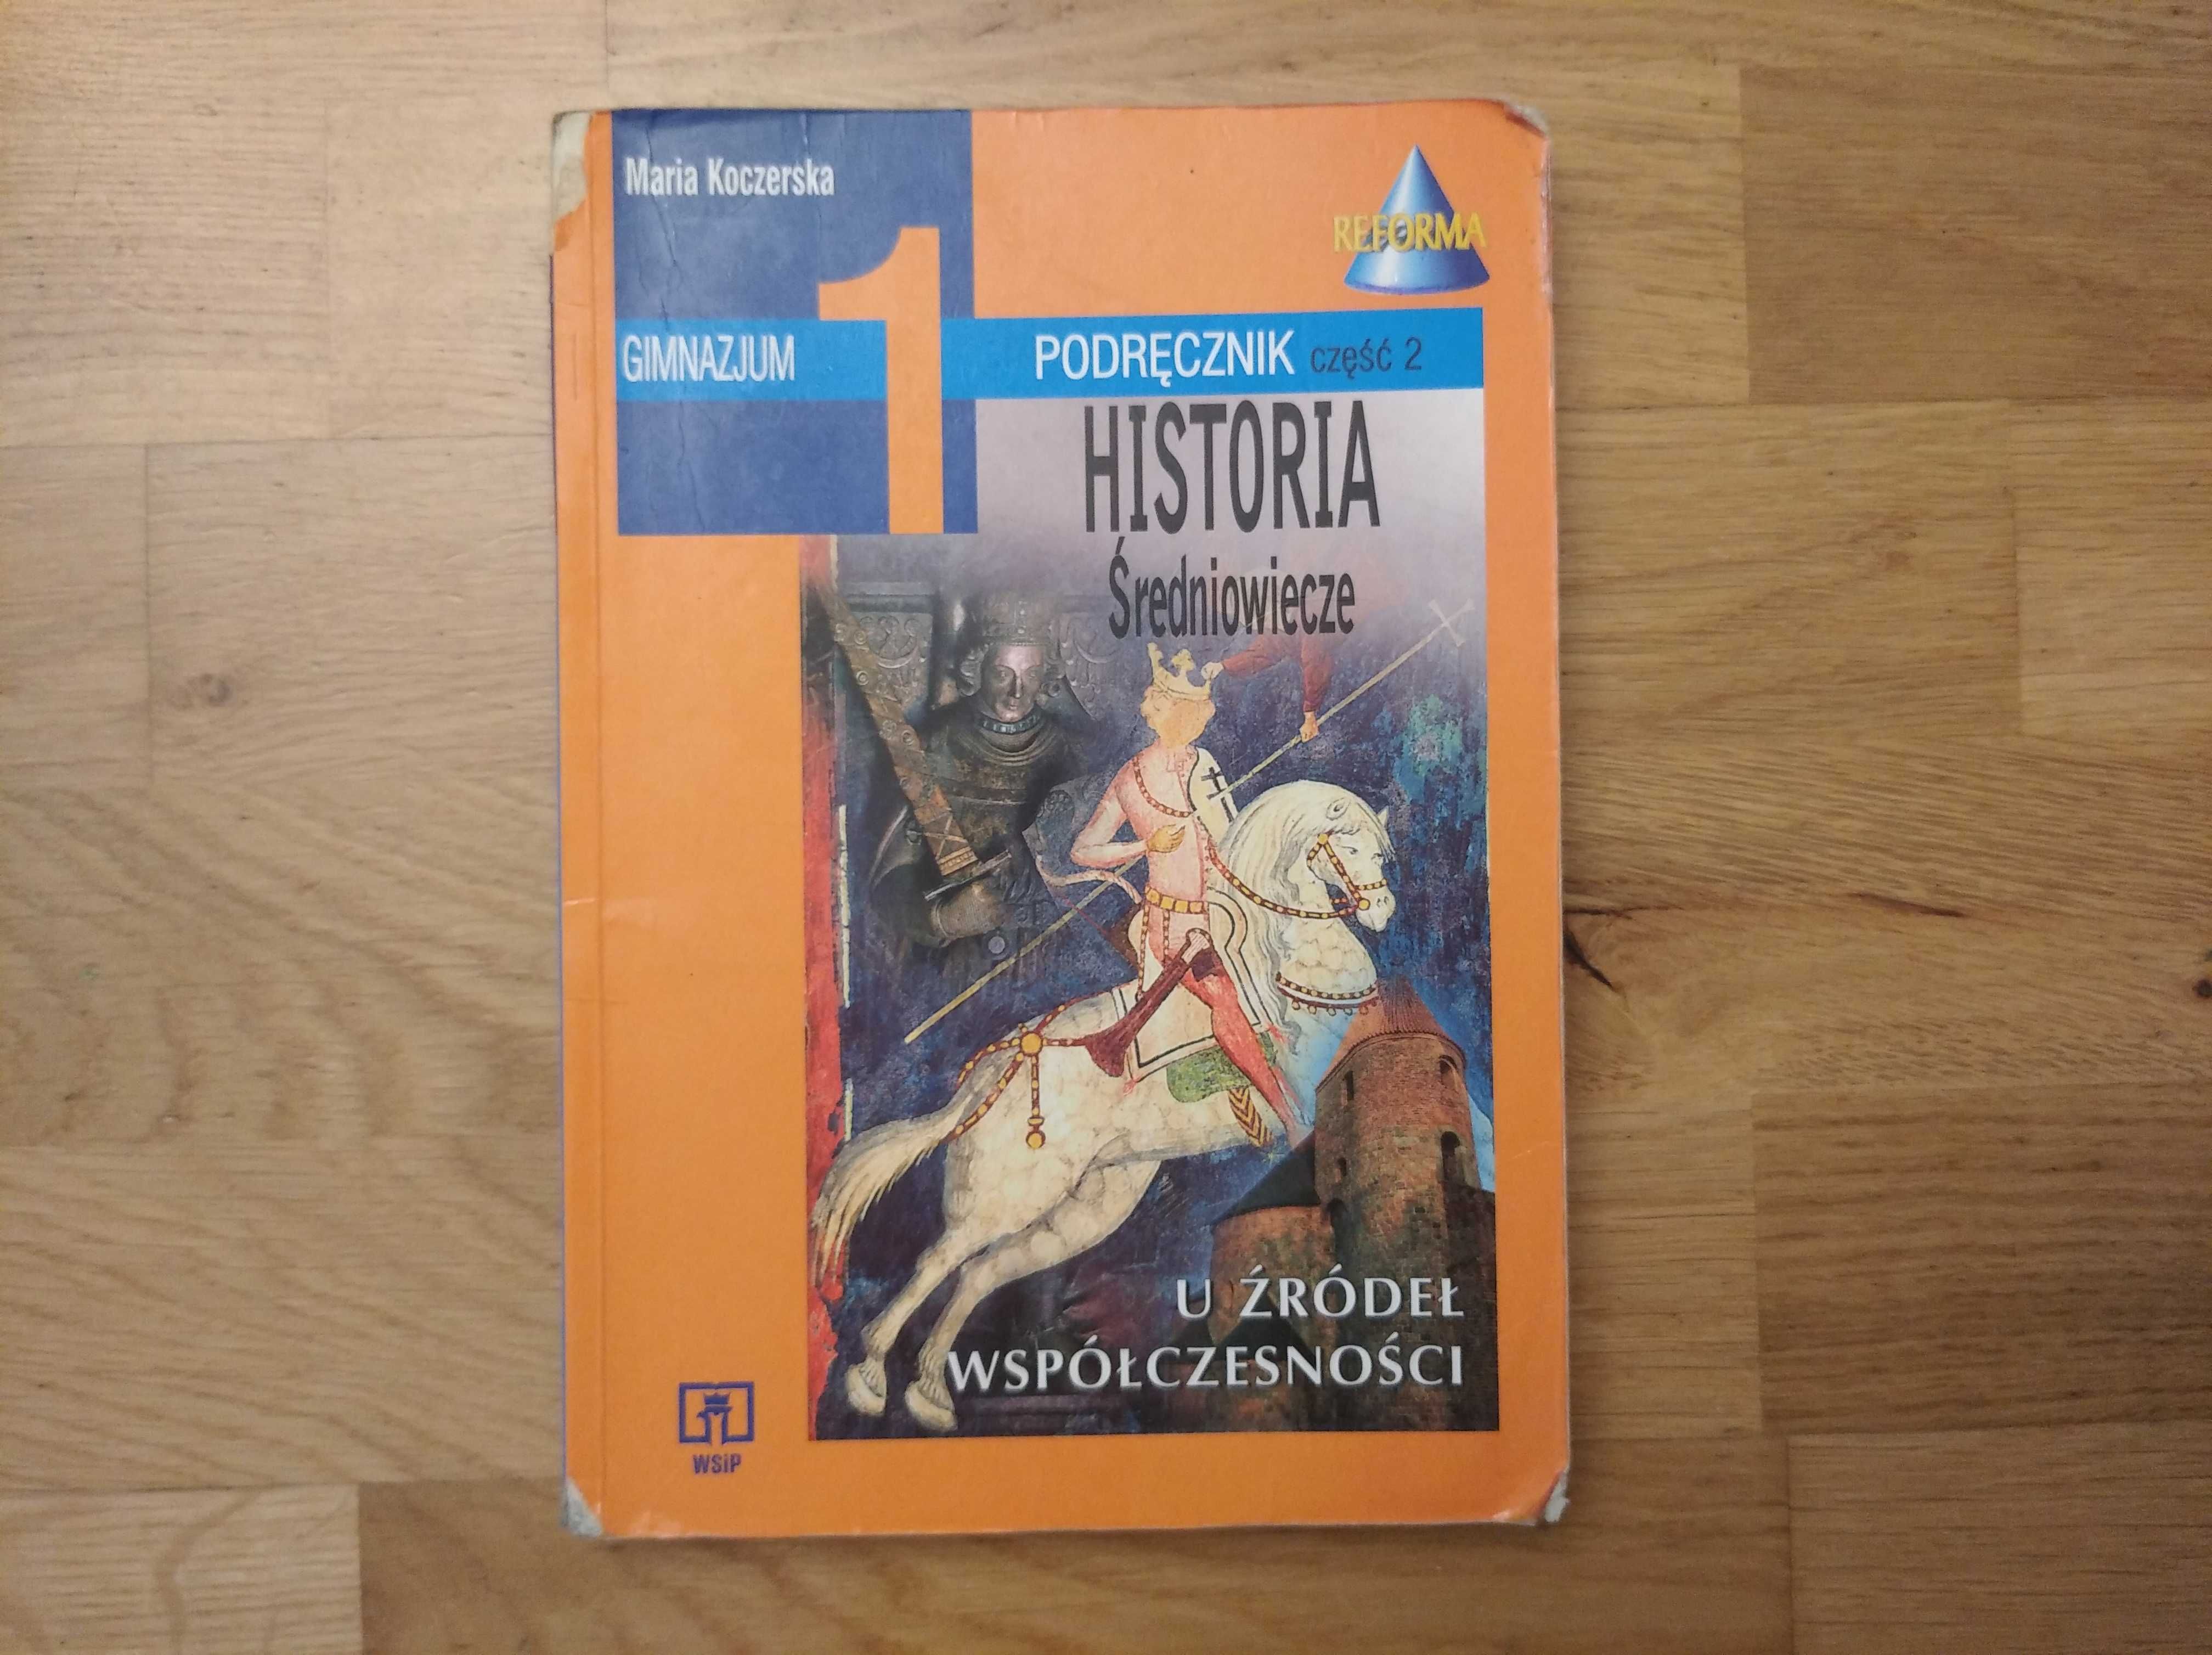 Podręcznik Historia Średniowiecze U źródeł współczesności Koczerska